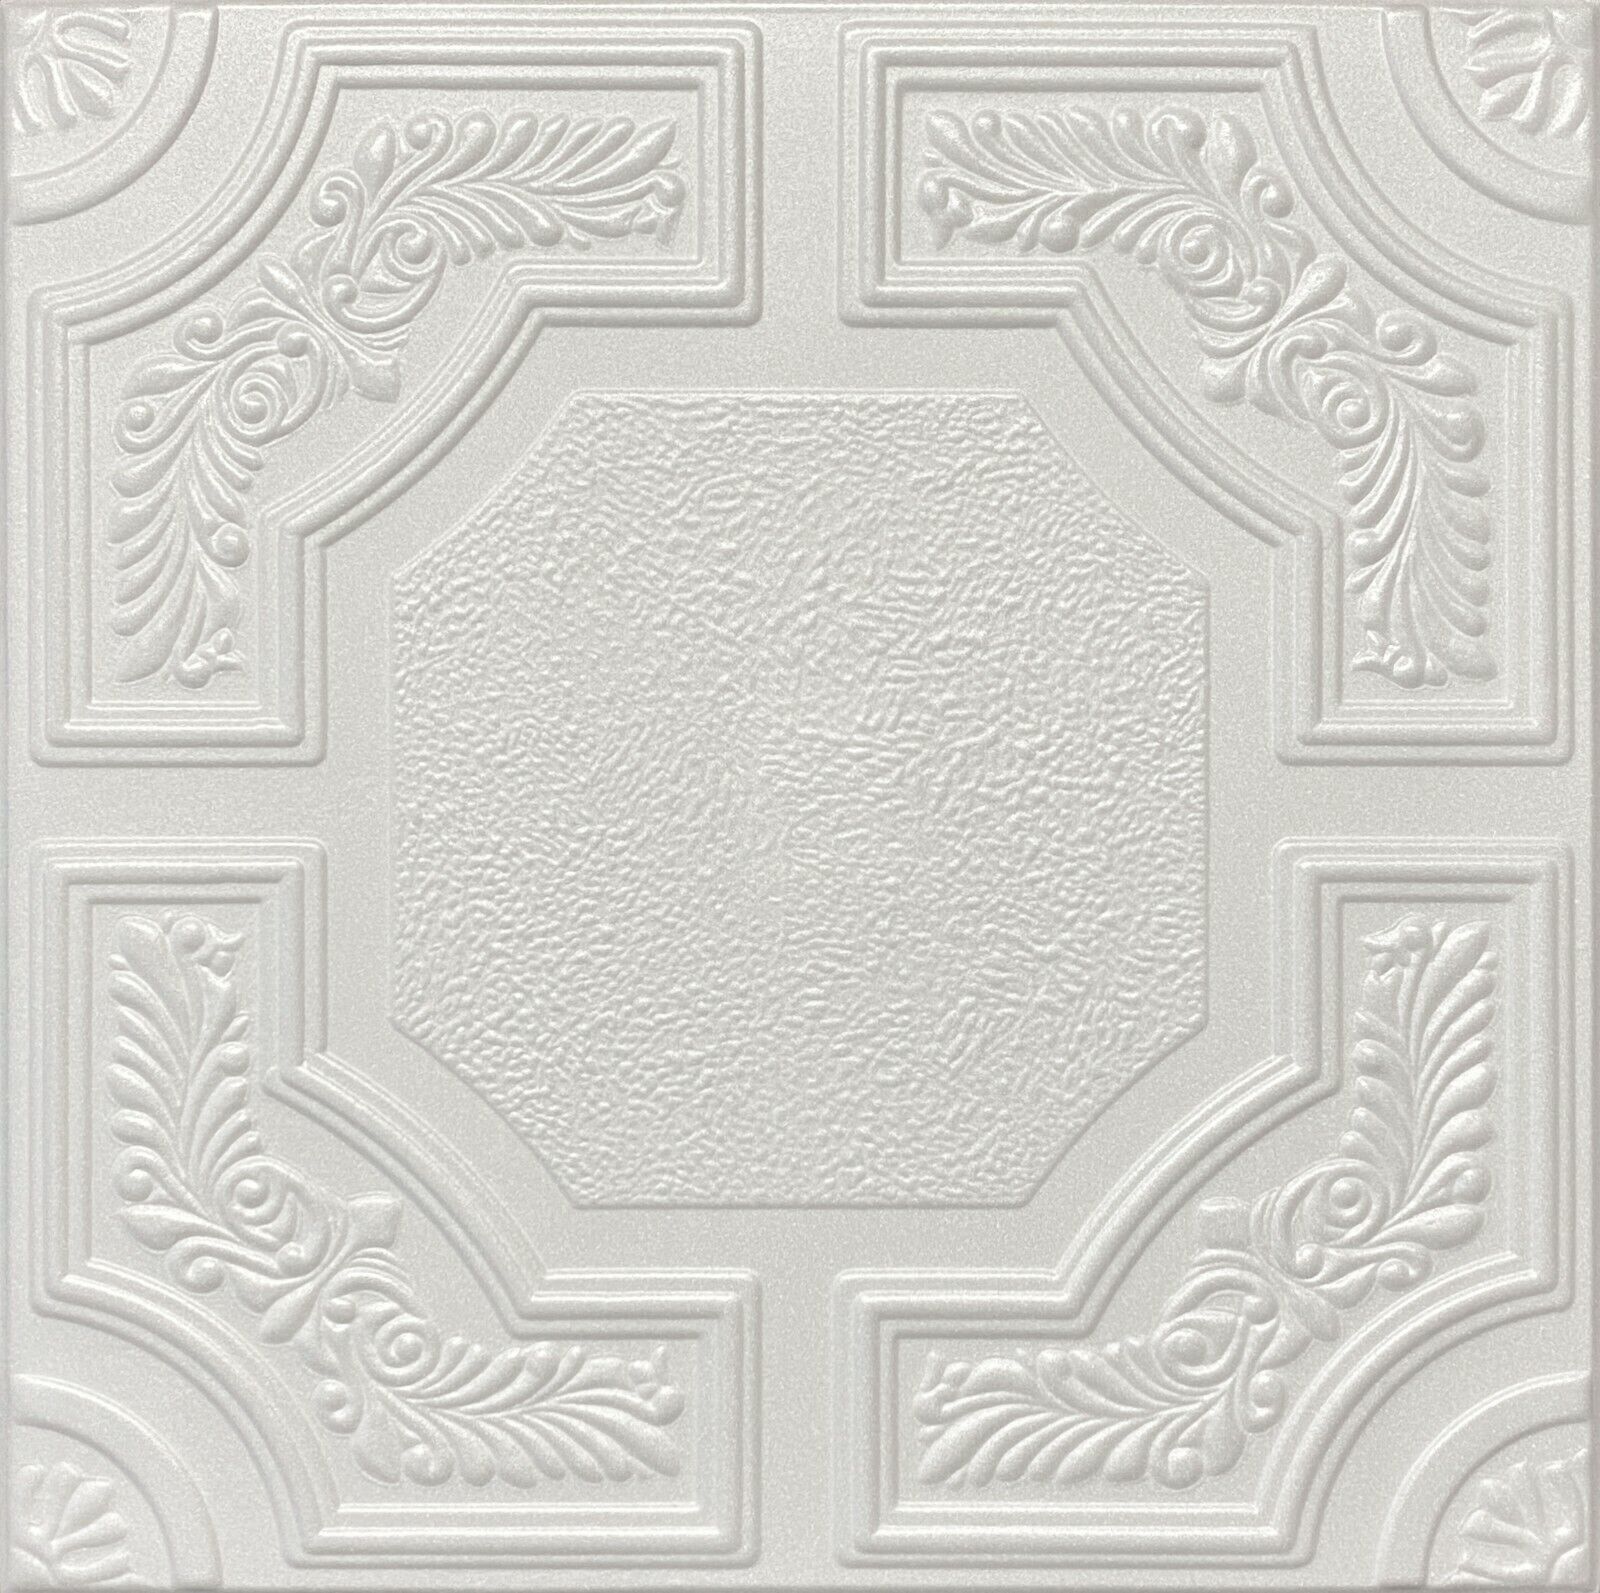 Home Decor, Ceiling Tiles, Glue Up, Foam,20"x20", Laurel Wreath R28W 8pcs Bundle EUROPE null